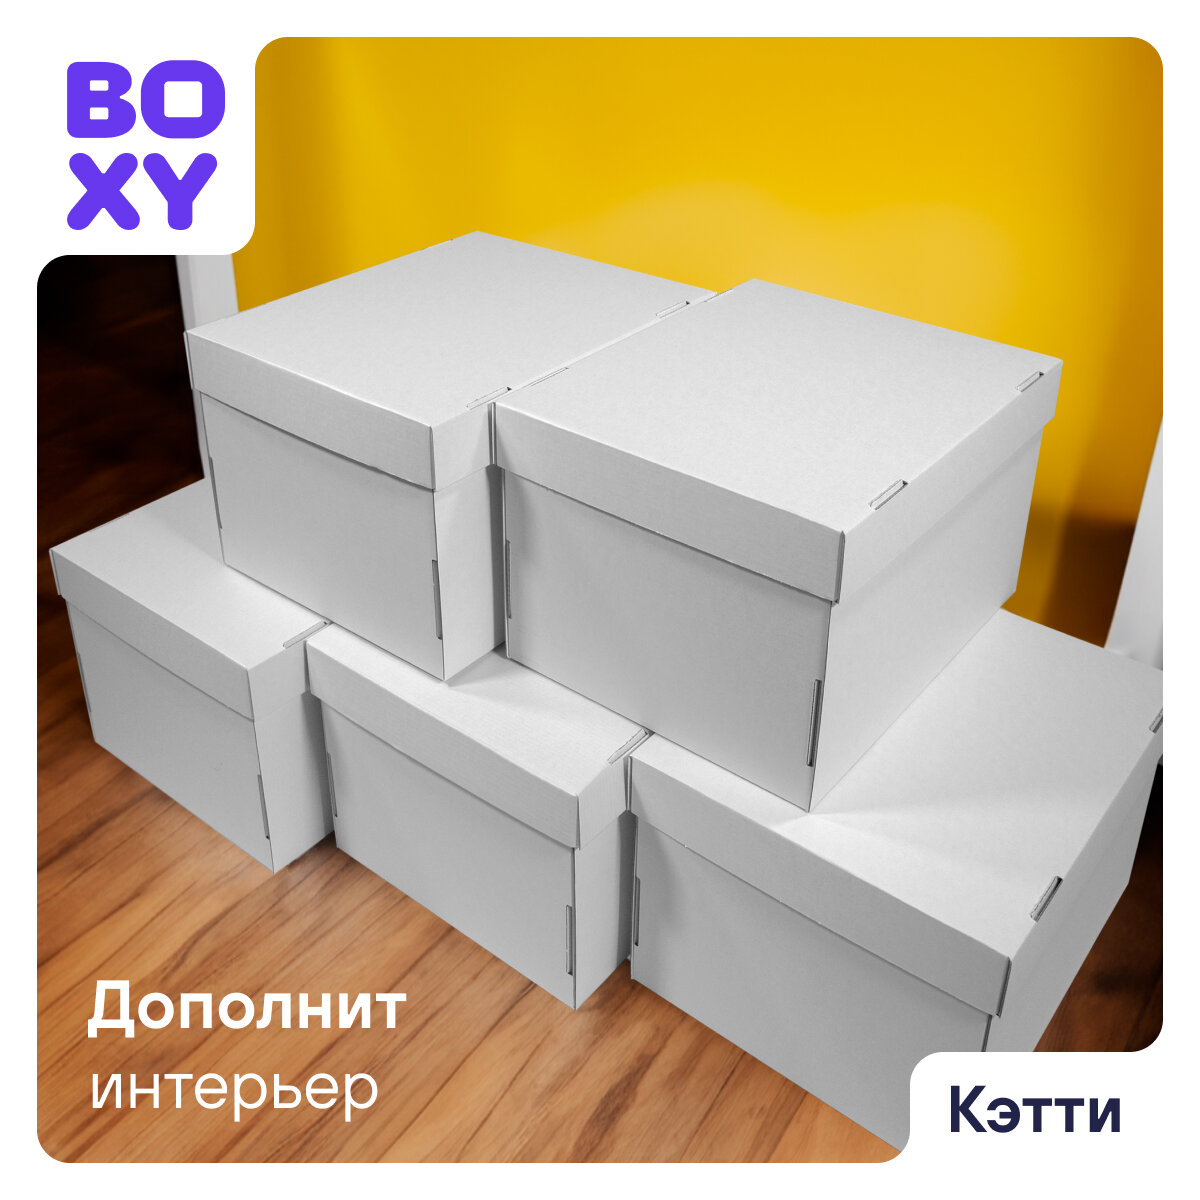 Коробки для хранения вещей, игрушек, коробка для подарка с крышкой кэтти BOXY, гофрокартон, белый, 32х26х17 см, 8 шт в упаковке